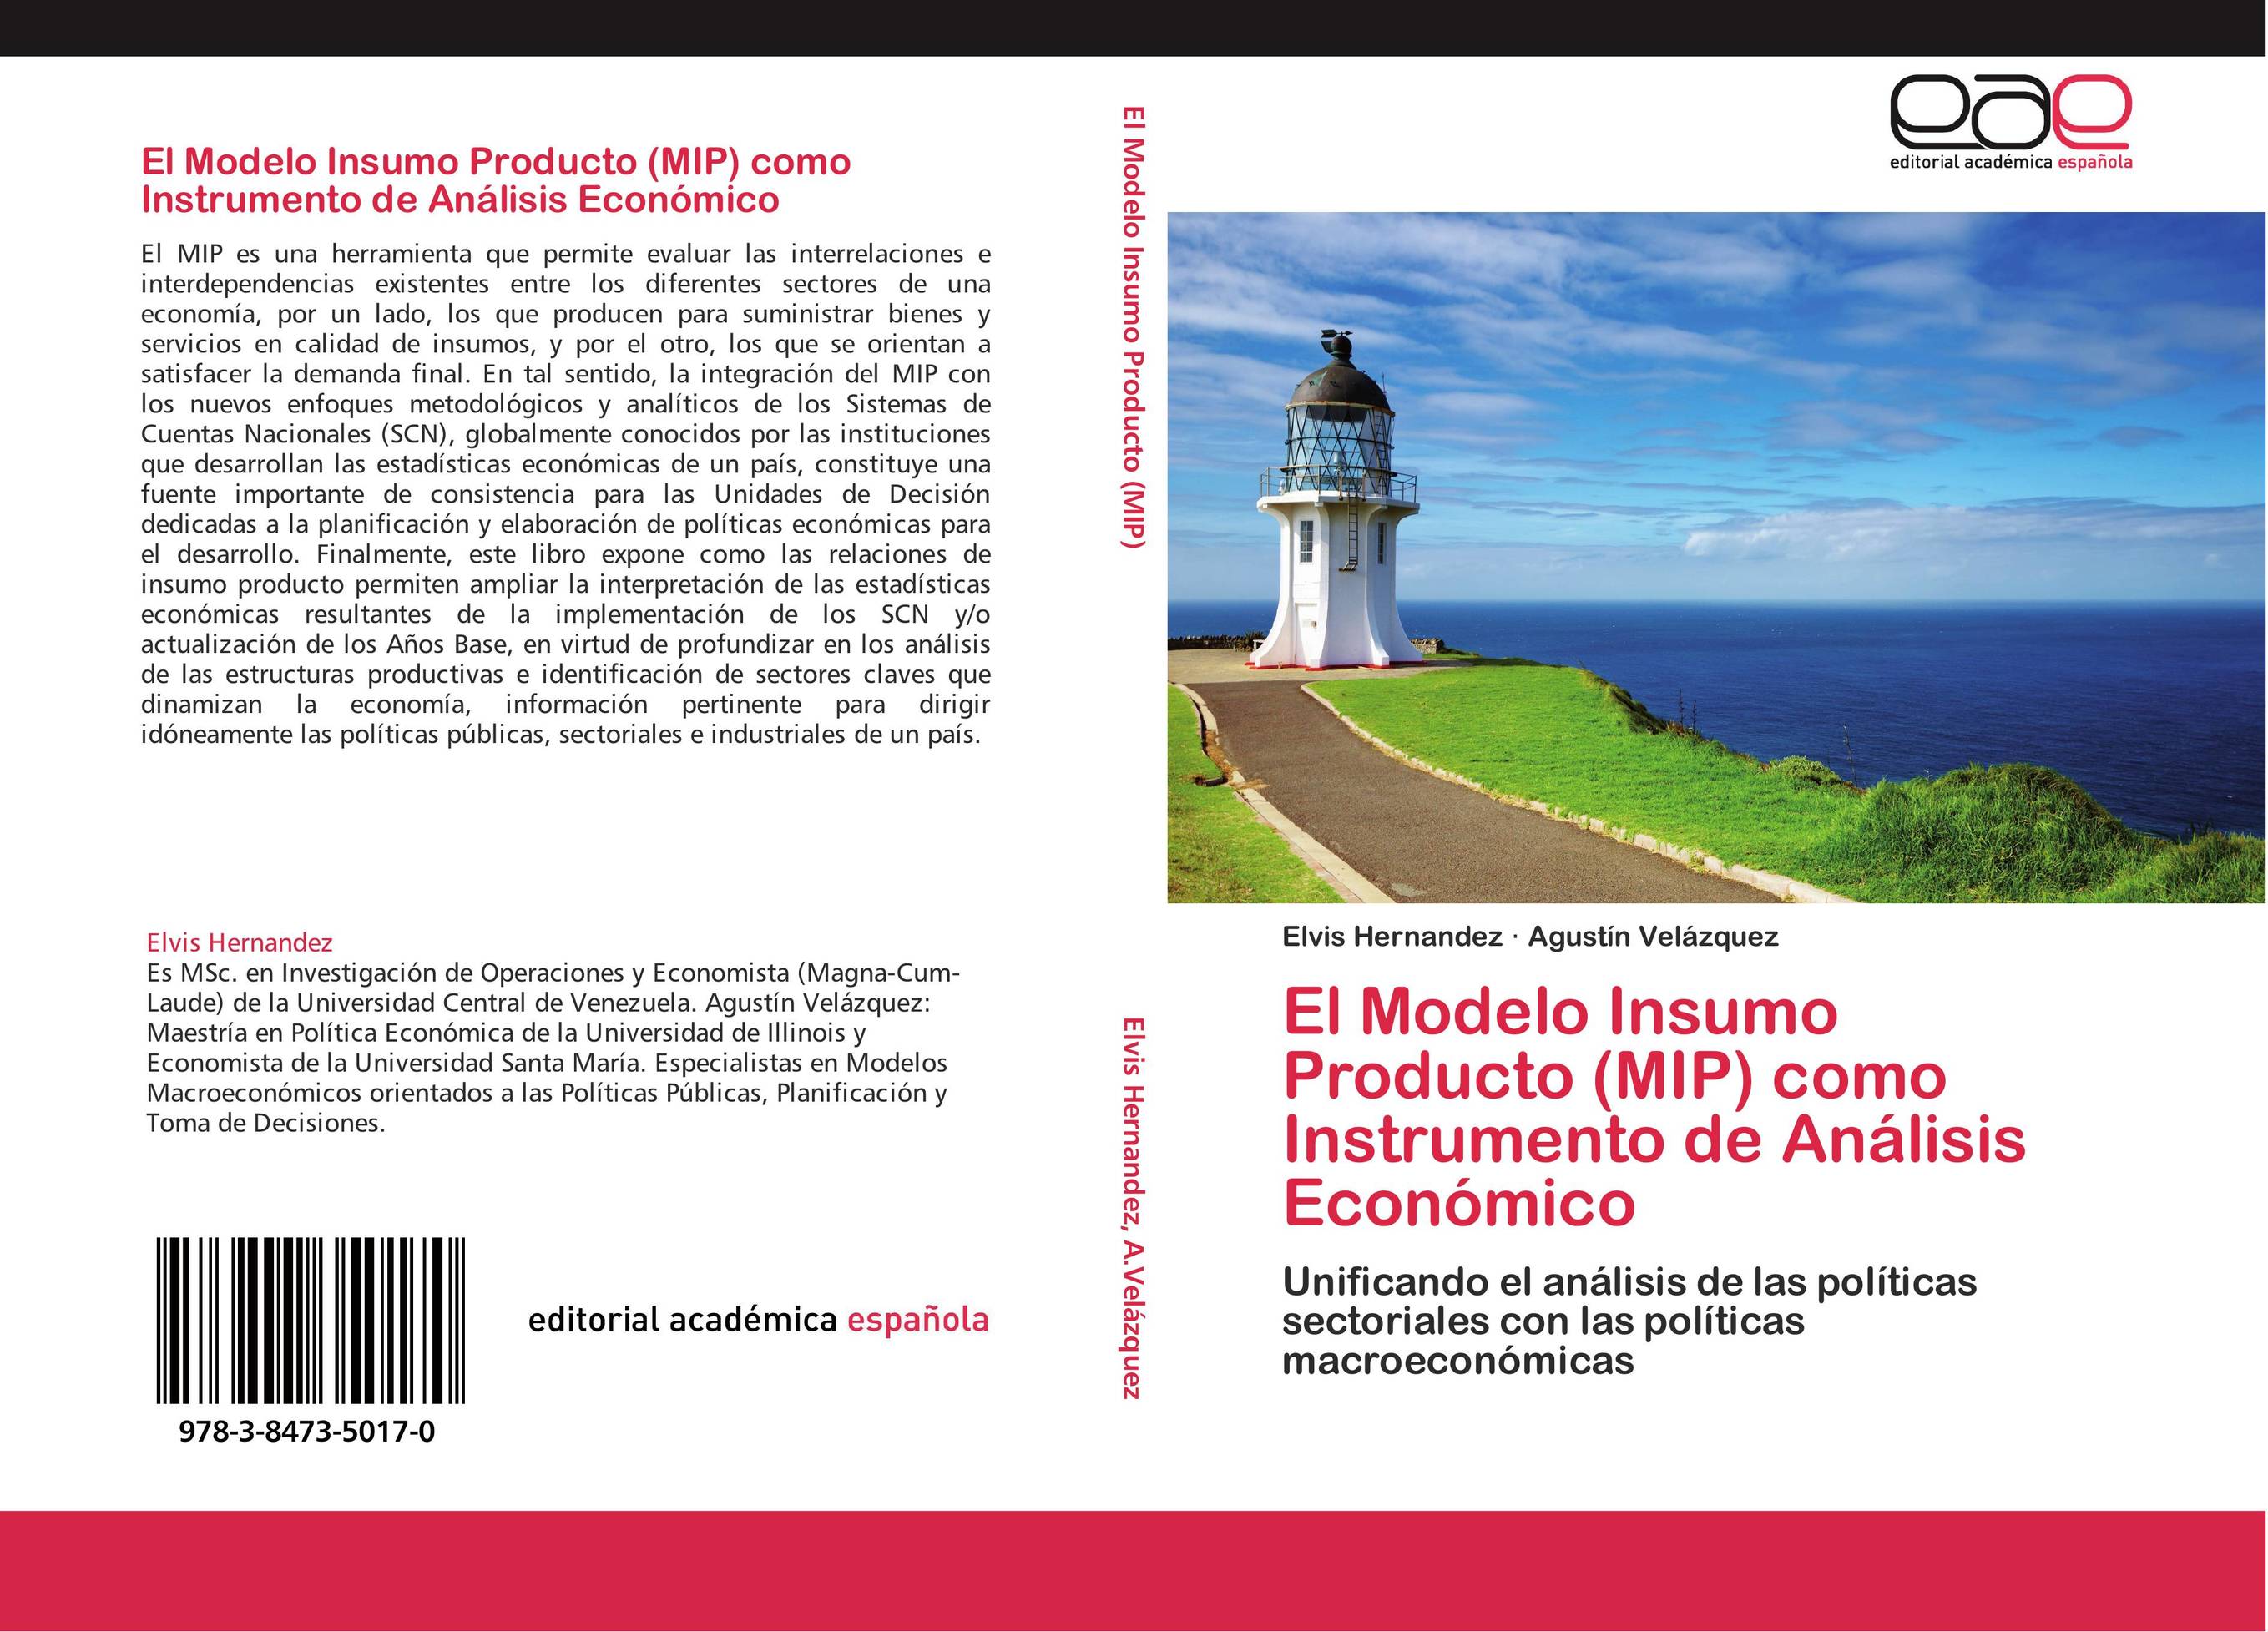 El Modelo Insumo Producto (MIP) como Instrumento de Análisis Económico